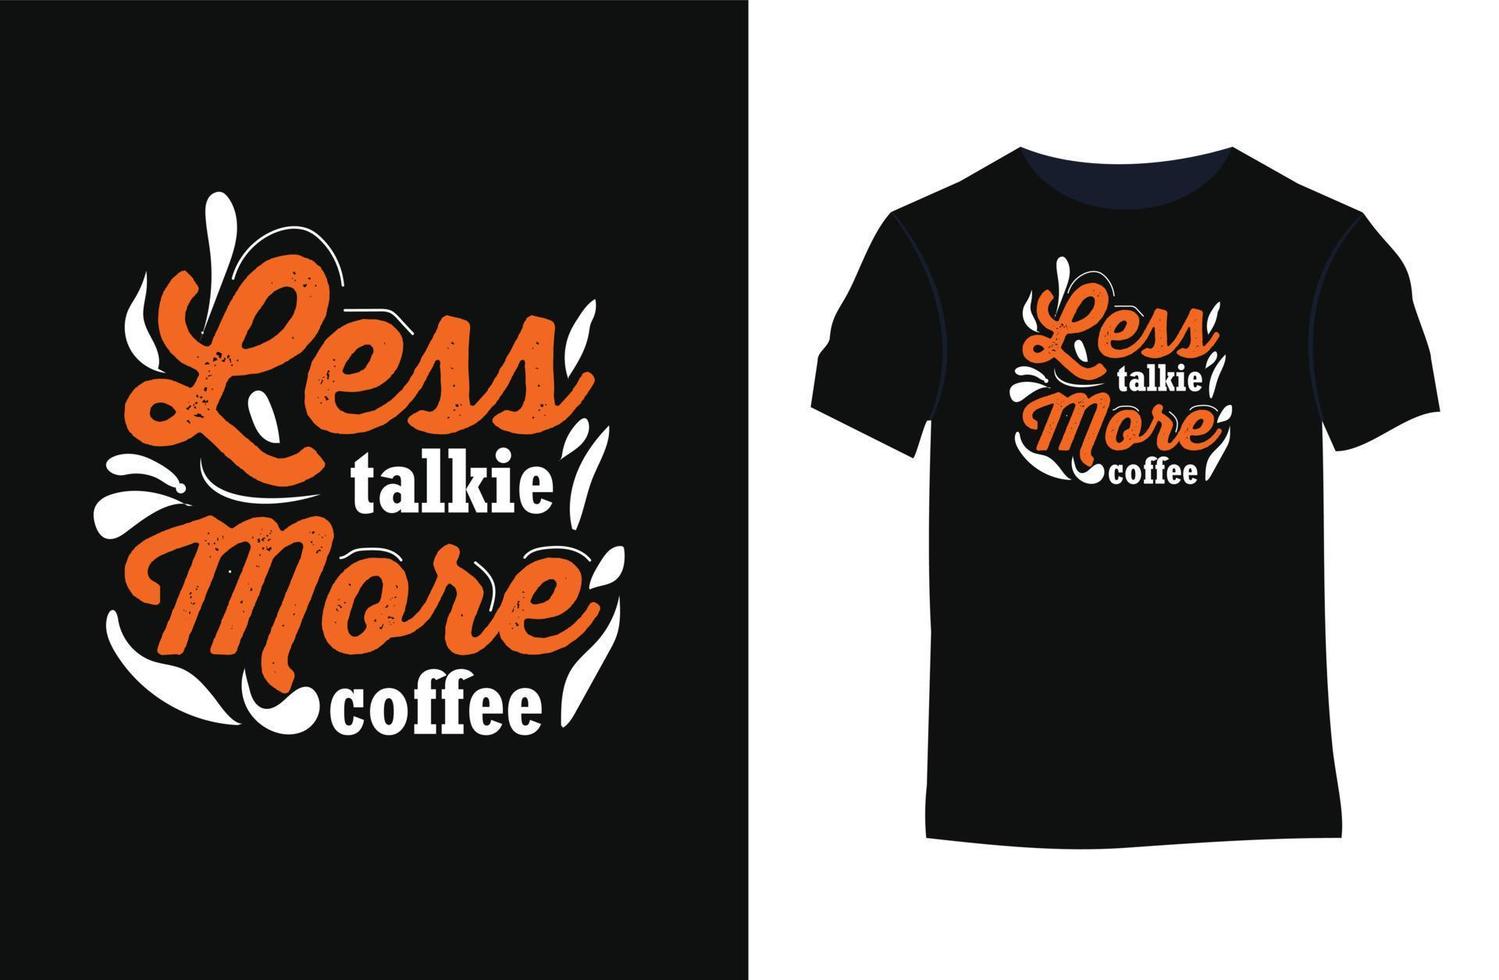 tipografia de café cita design de camiseta vetorial vetor